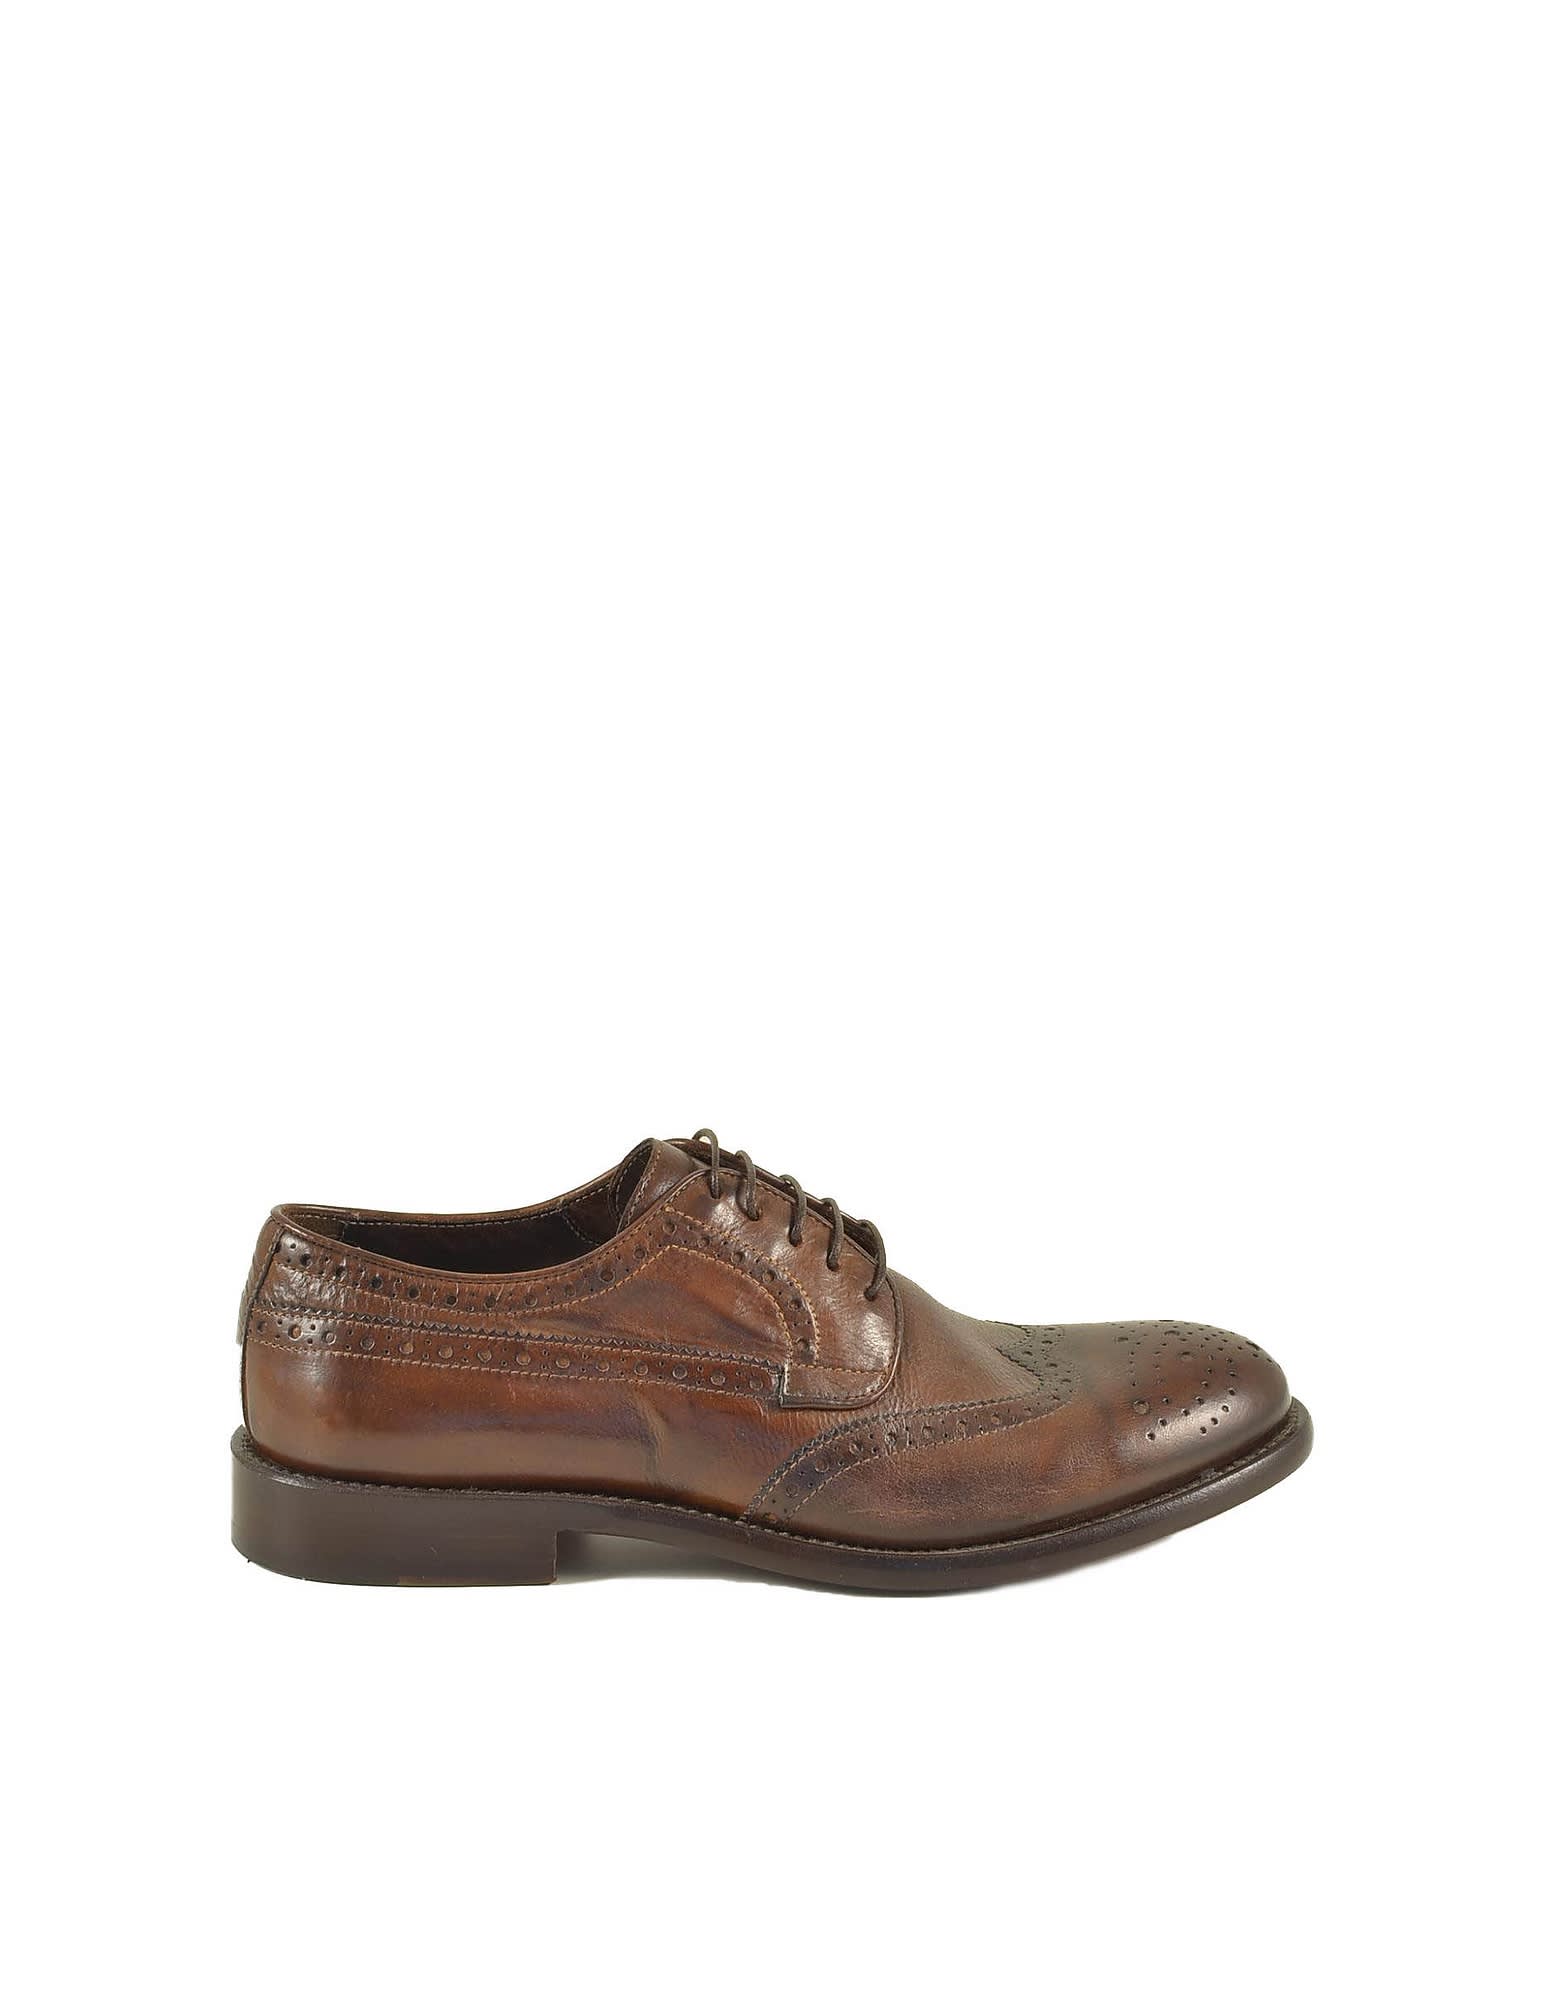 Corvari Mens Brown Shoes